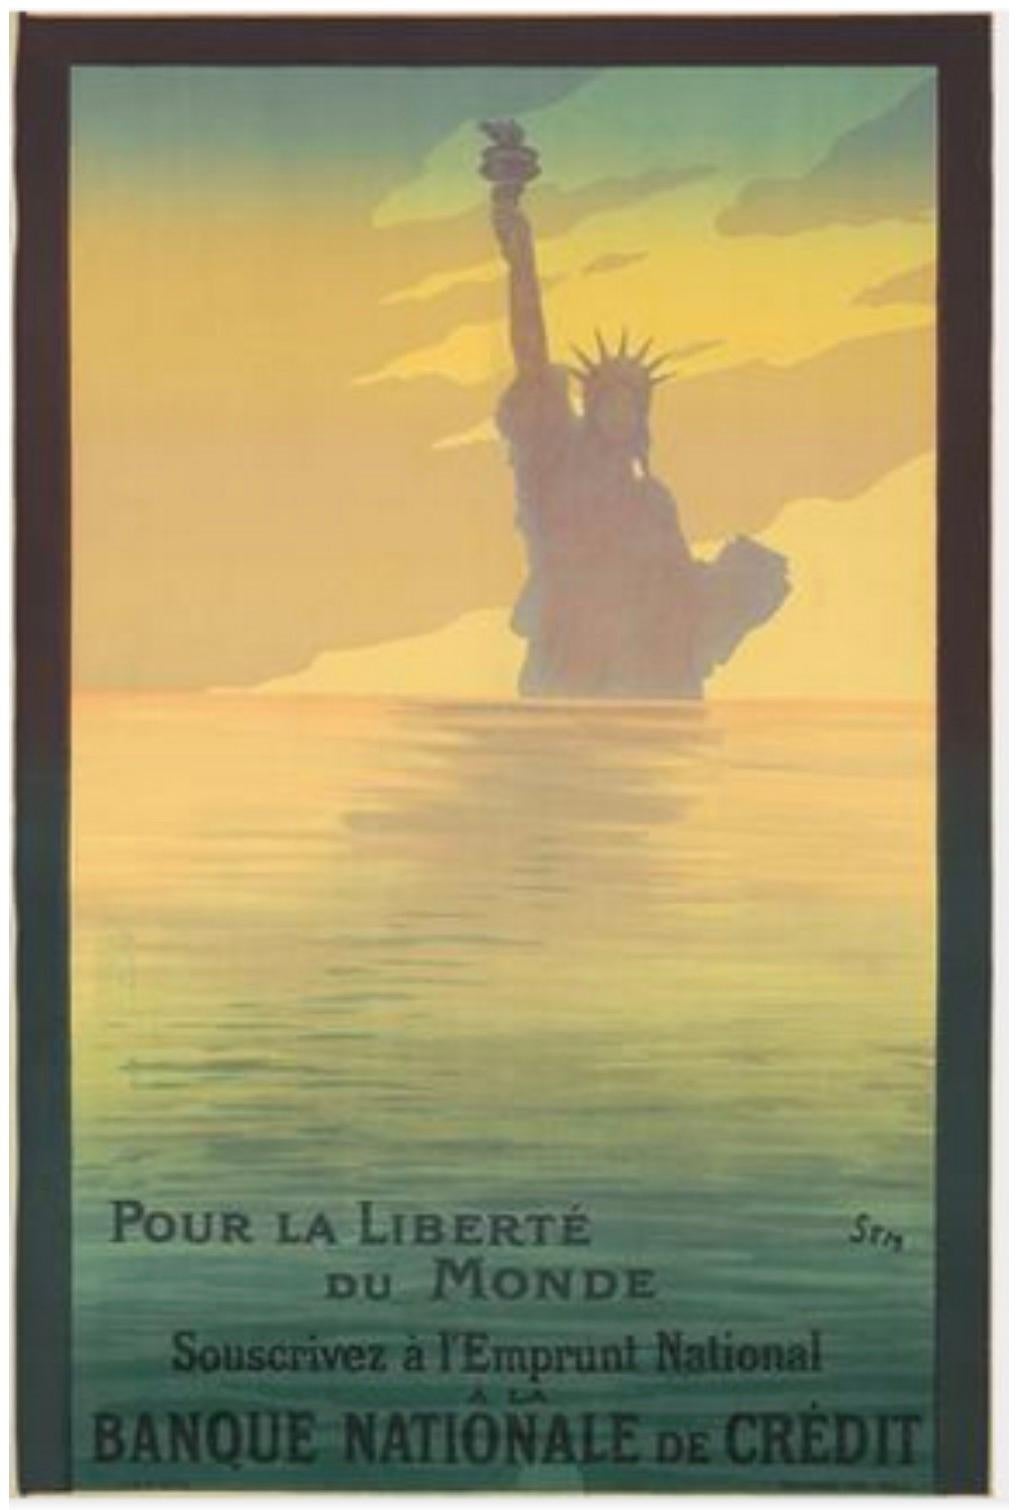 Künstler: SEM Georges Goursat (französisch, 1863-1934)

Entstehungszeit: 1917

Medium: Original Steinlithographie Vintage Poster

Größe: 31″ x 47